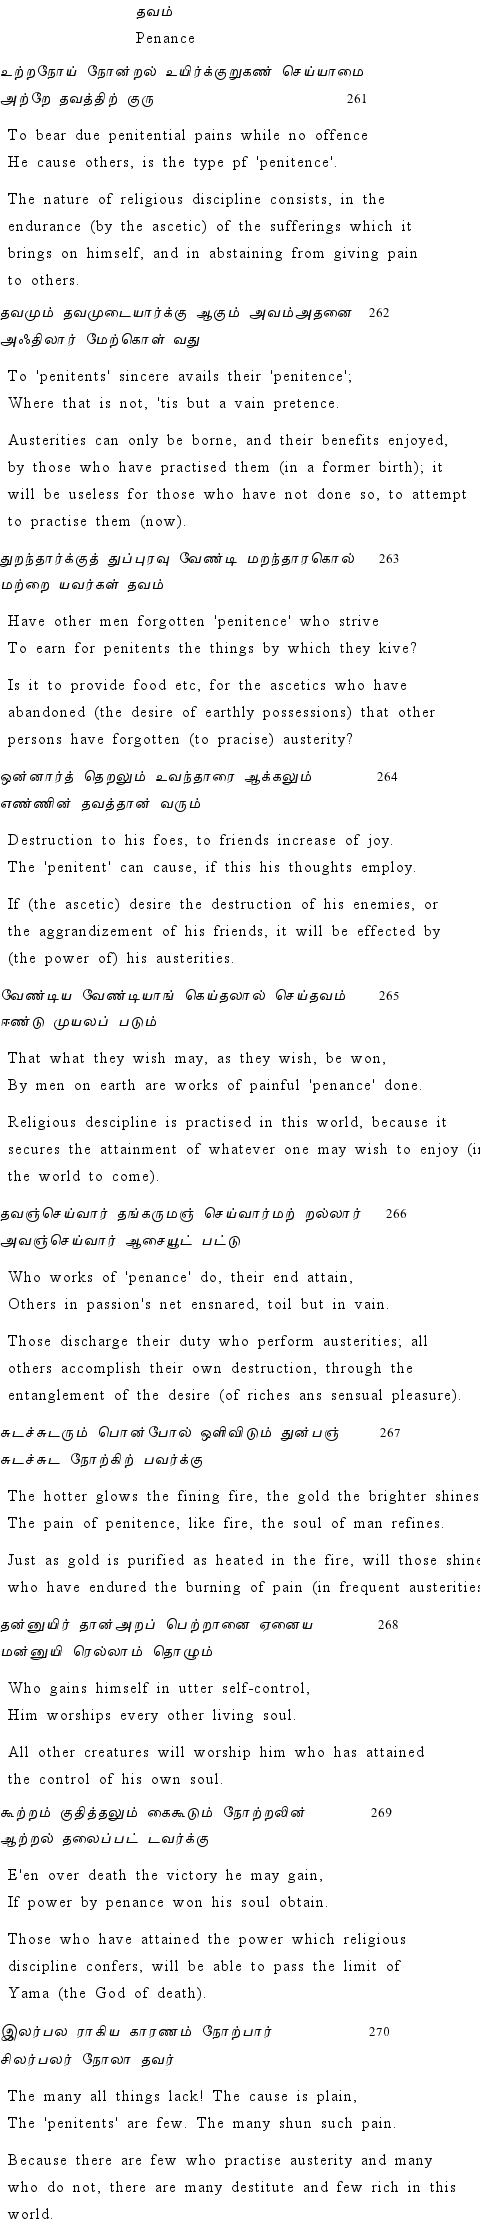 Text of Adhikaram 27